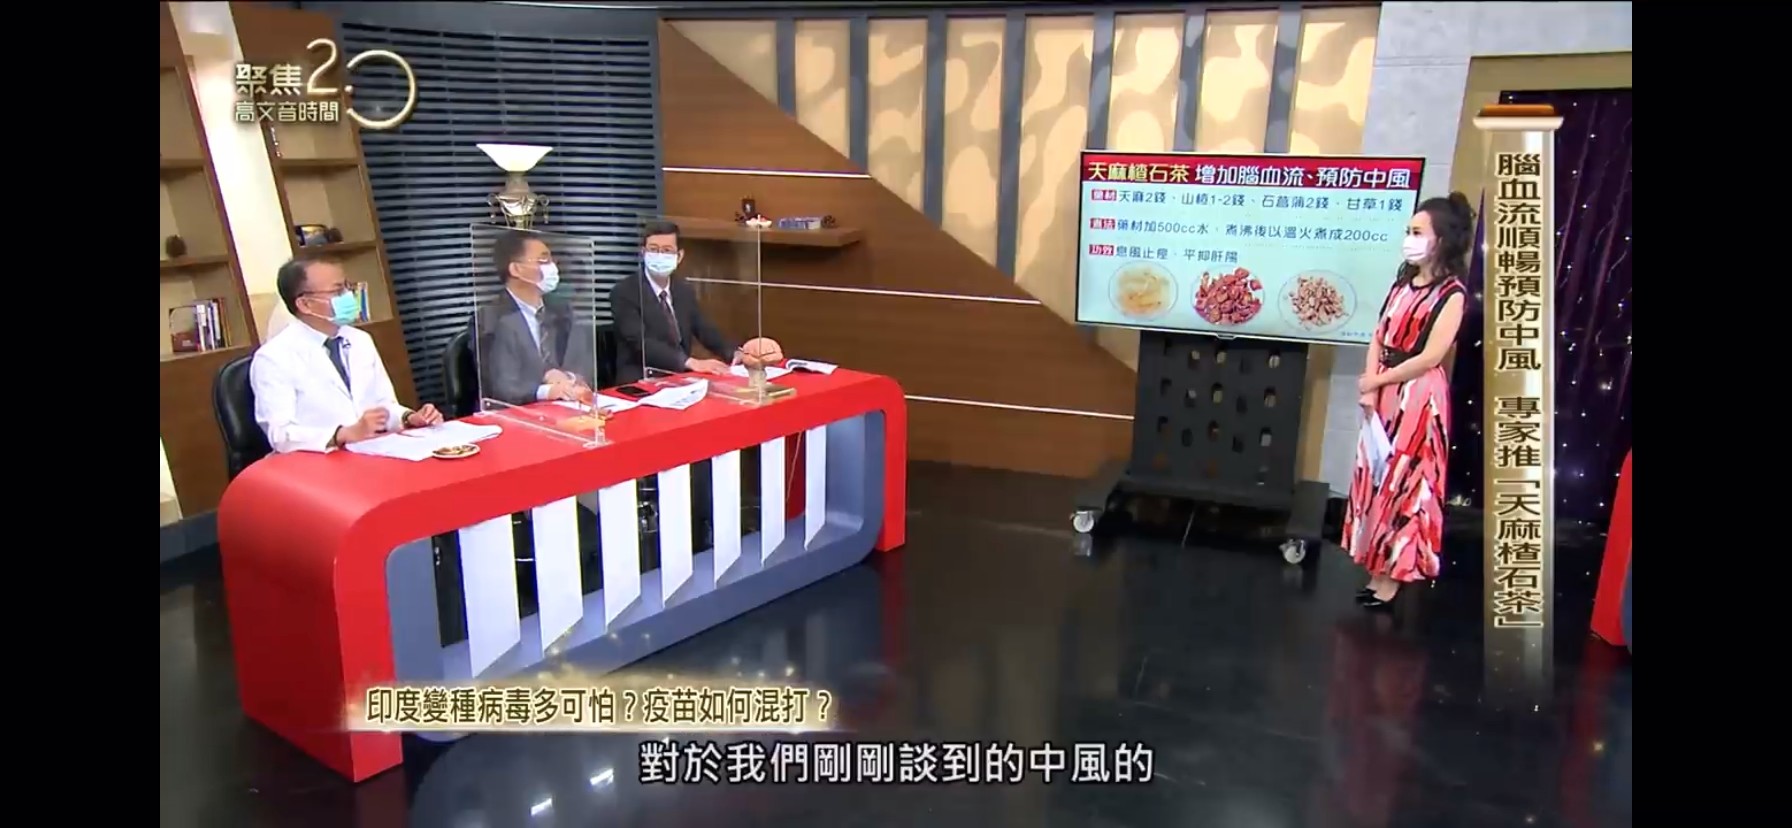 年代新聞台『聚焦2.0』邀請翁清松院長參加節目錄影